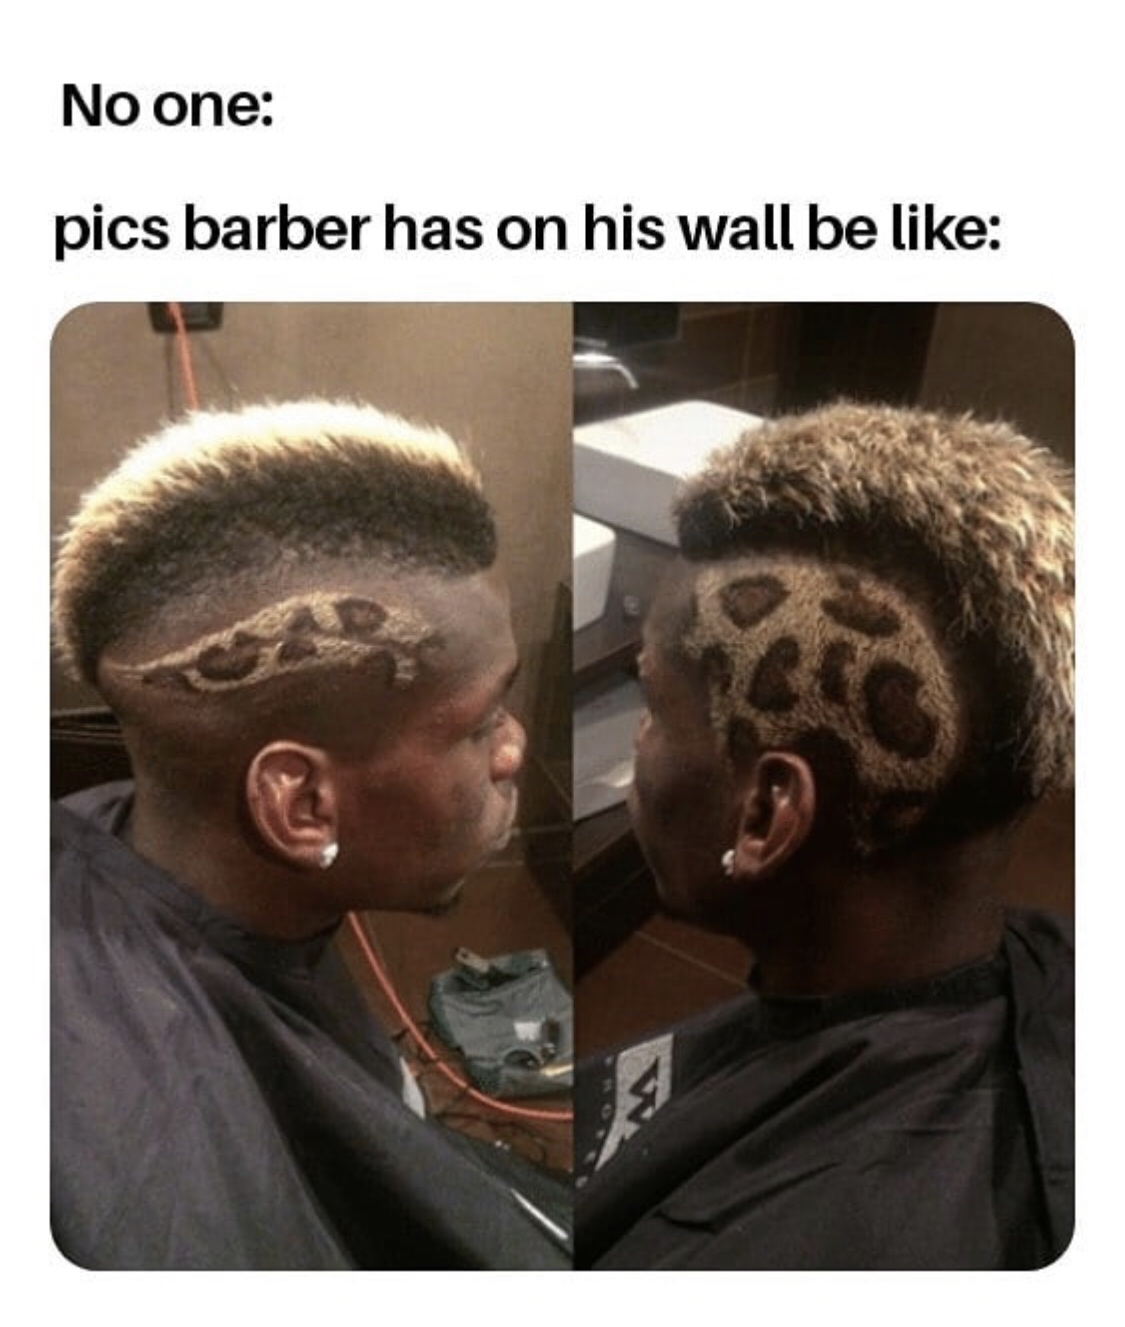 cheetah haircut - No one pics barber has on his wall be